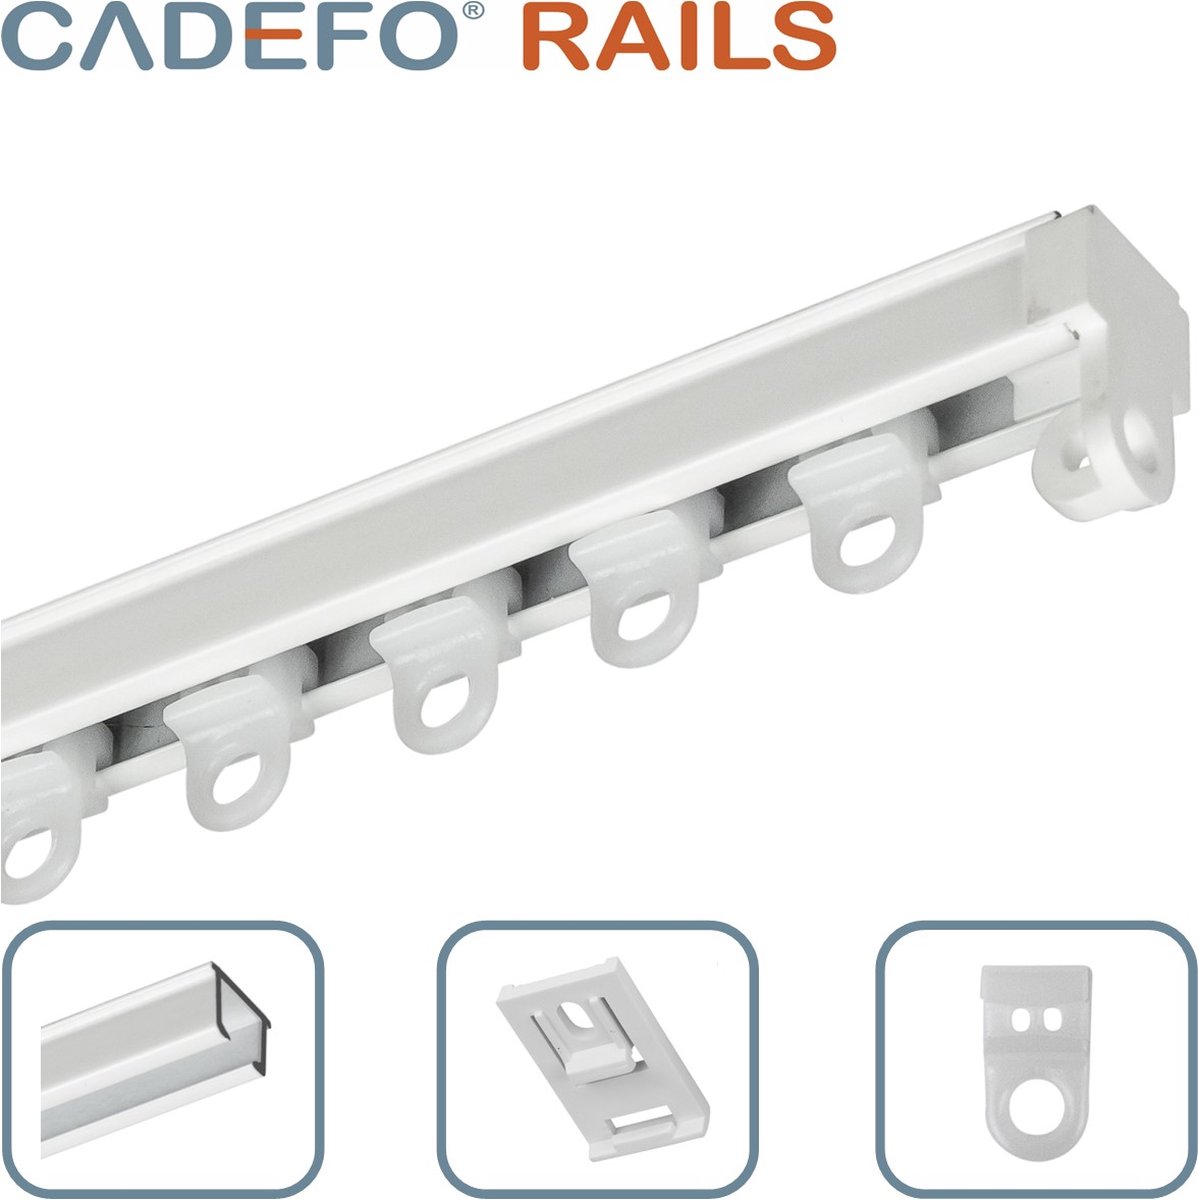 CADEFO RAILS (151 - 200 cm) Gordijnrails - Compleet op maat! - UIT 1 STUK - Leverbaar tot 6 meter - Plafondbevestiging - Lengte 185 cm